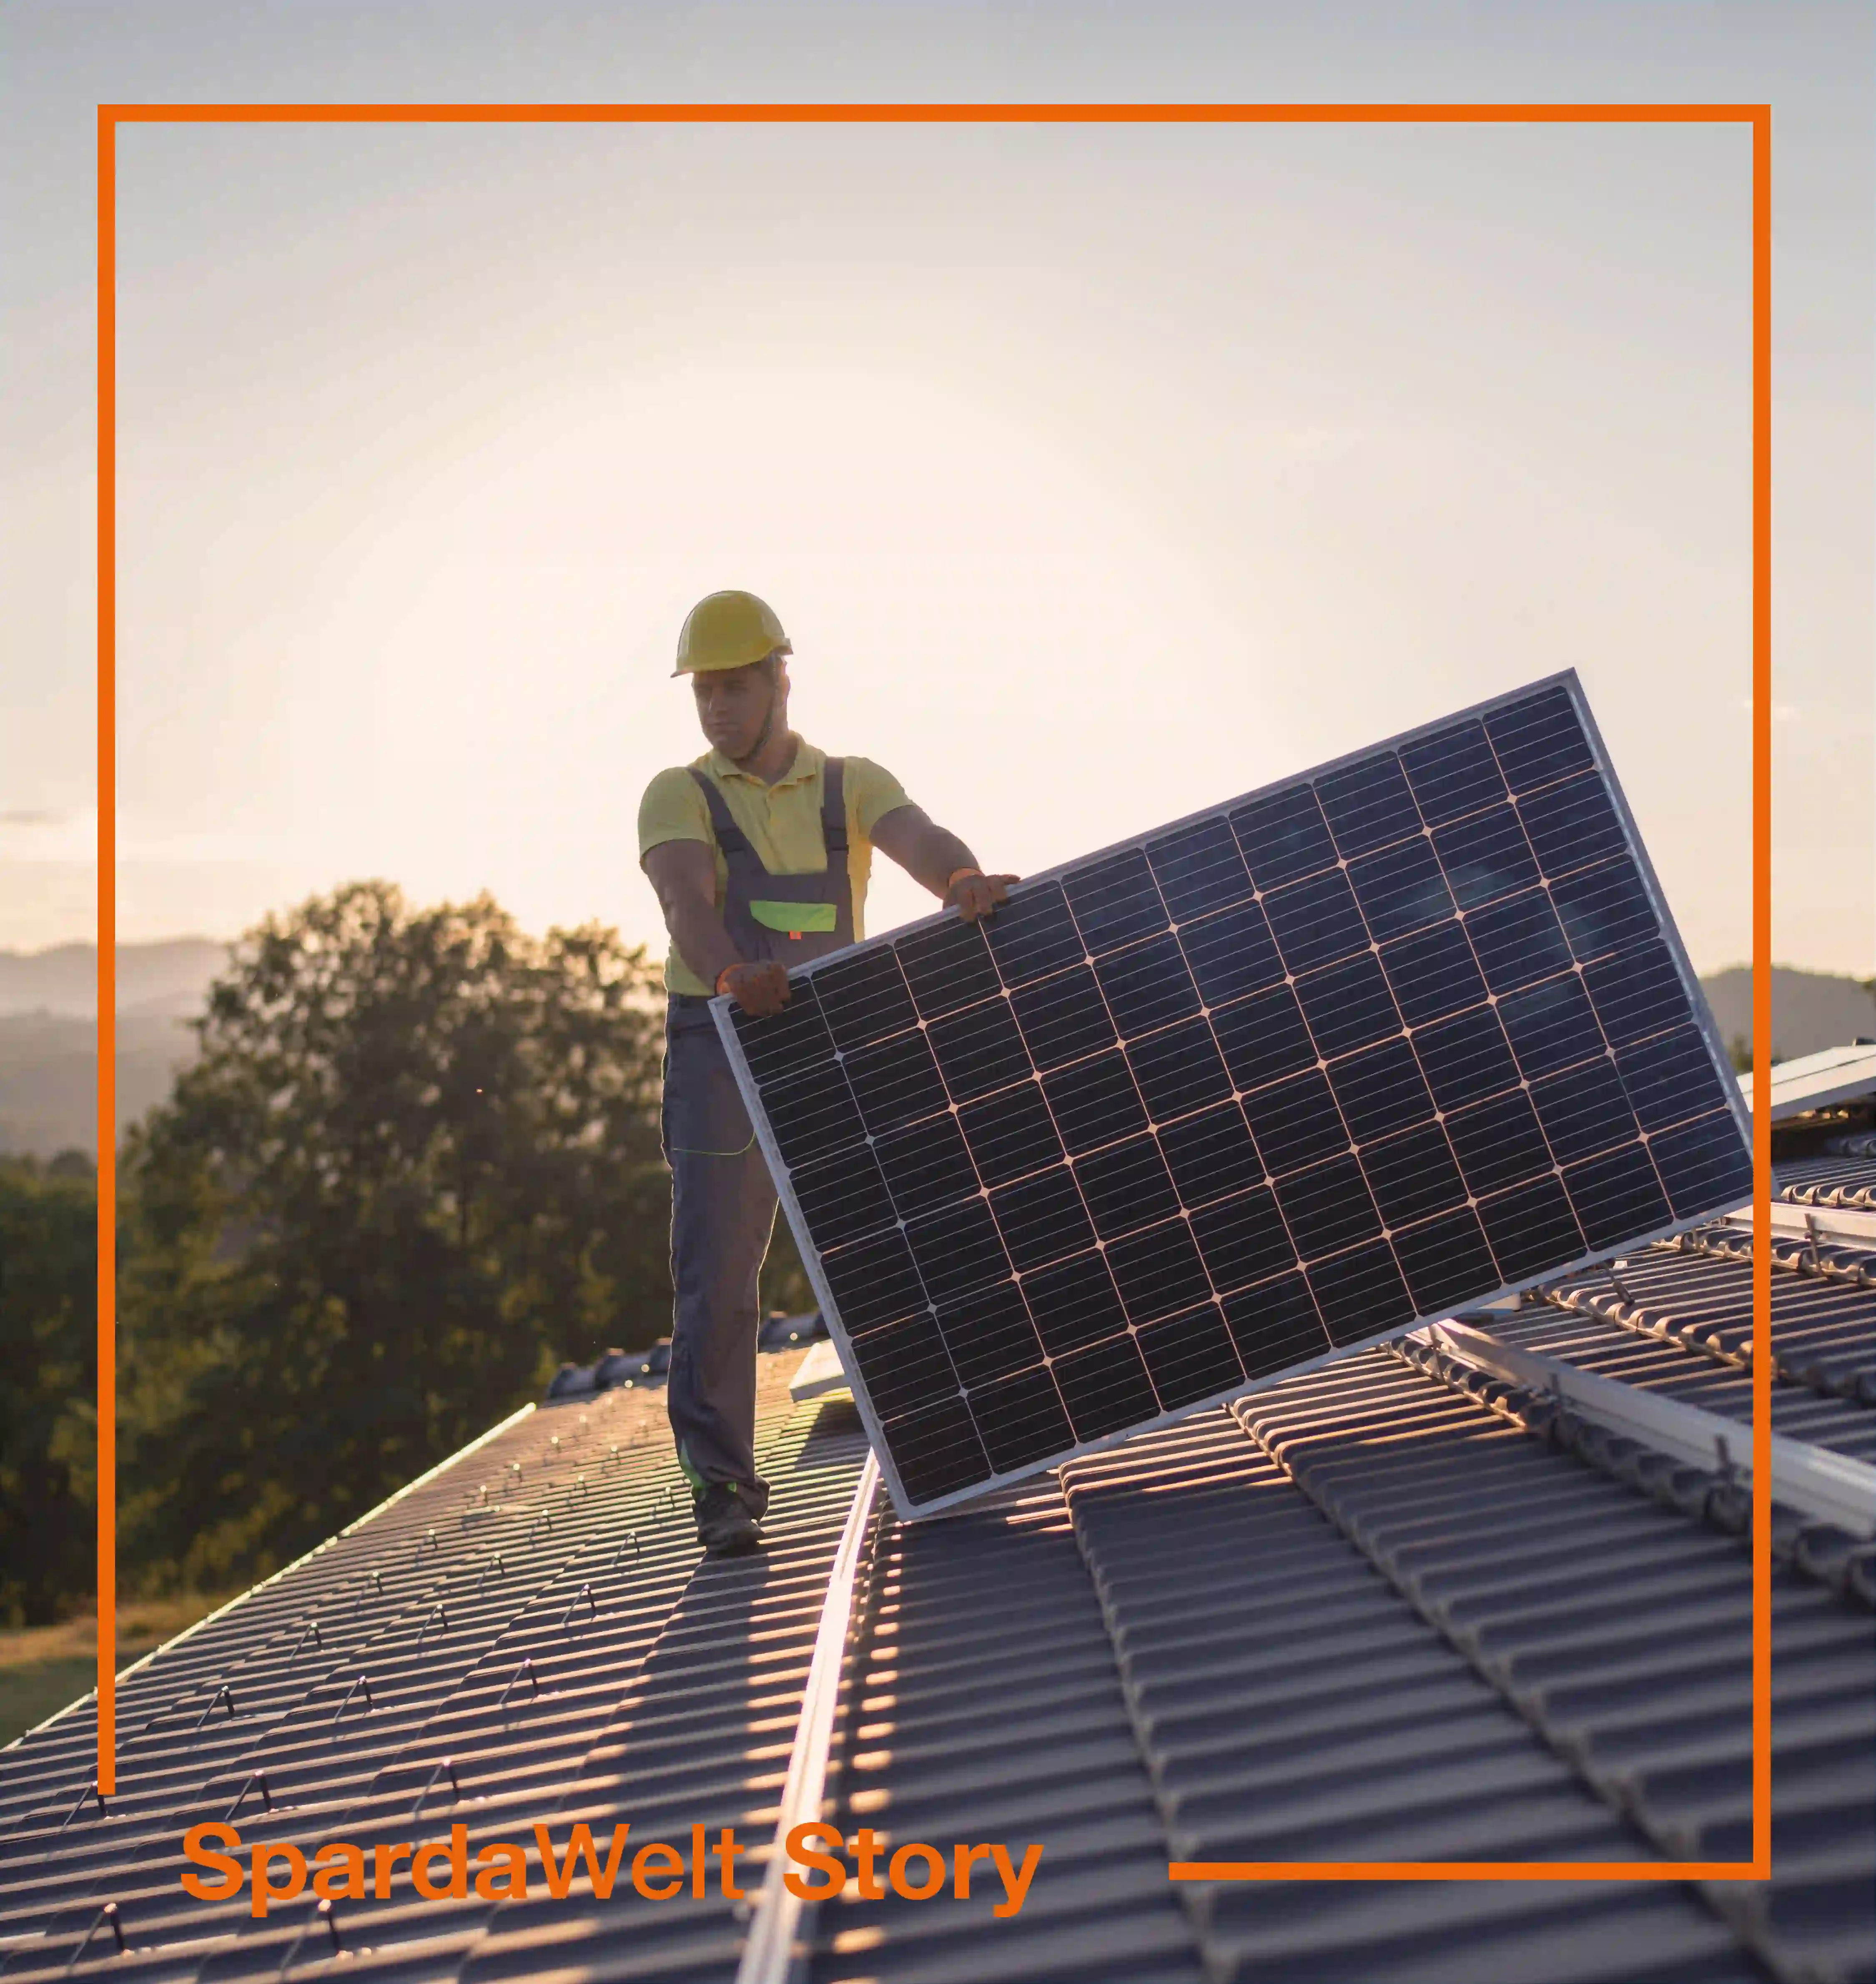 Ein Handwerker steht auf einem Dach und bringt eine Solarzelle an. Um das Bild herum ist ein orangener Rahmen. Der Schriftzug "SpardaWelt Story" weißt darauf hin, dass es sich um eine Empfehlung zu einer anderen SpardaWelt Story handelt.